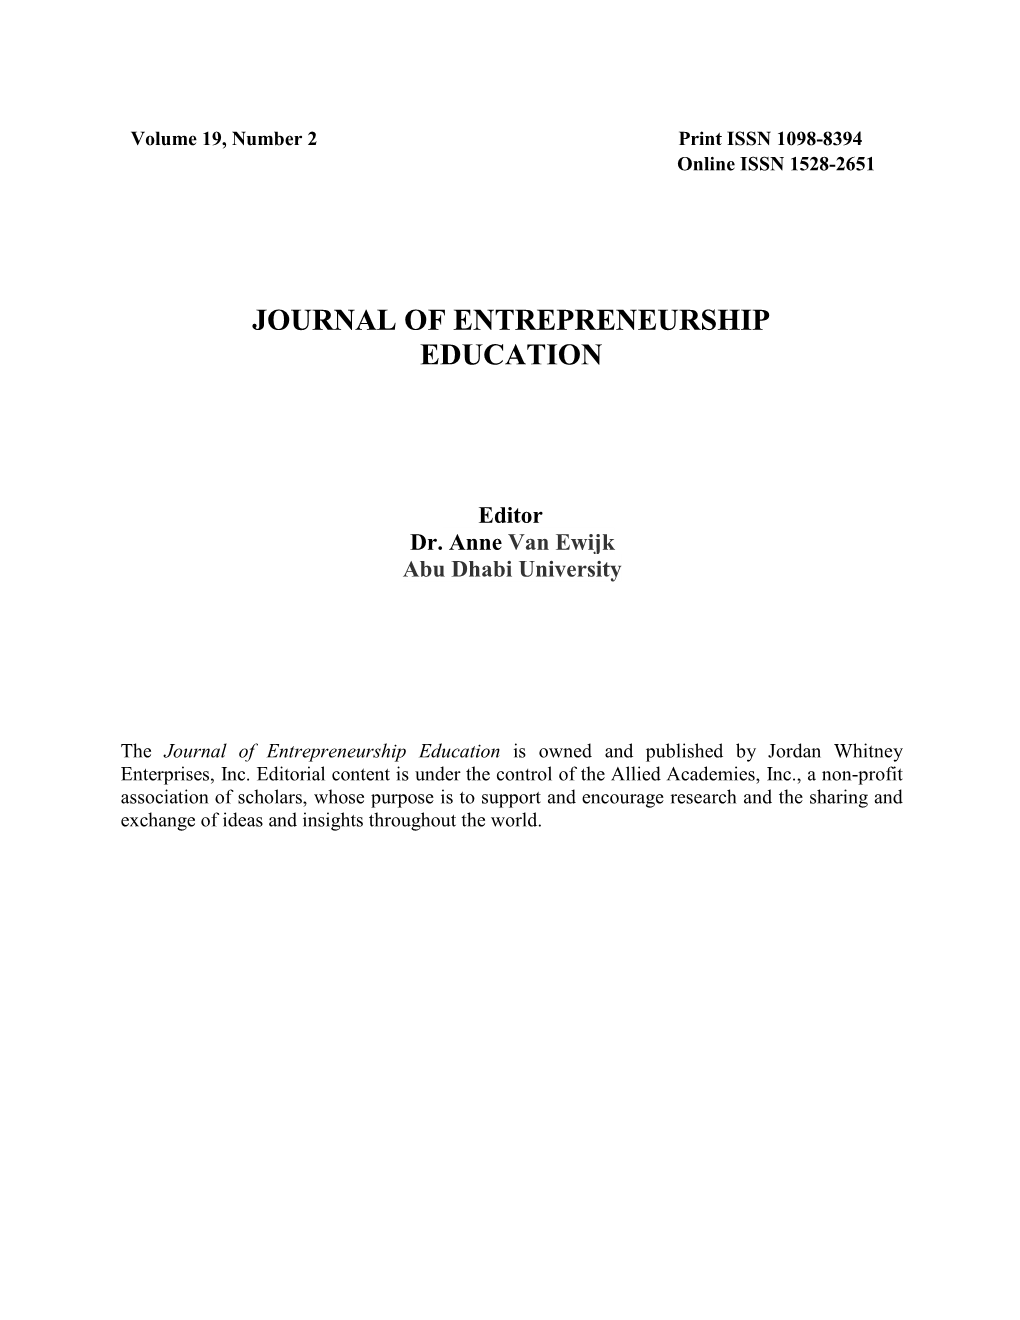 Journal of Entrepreneurship Education